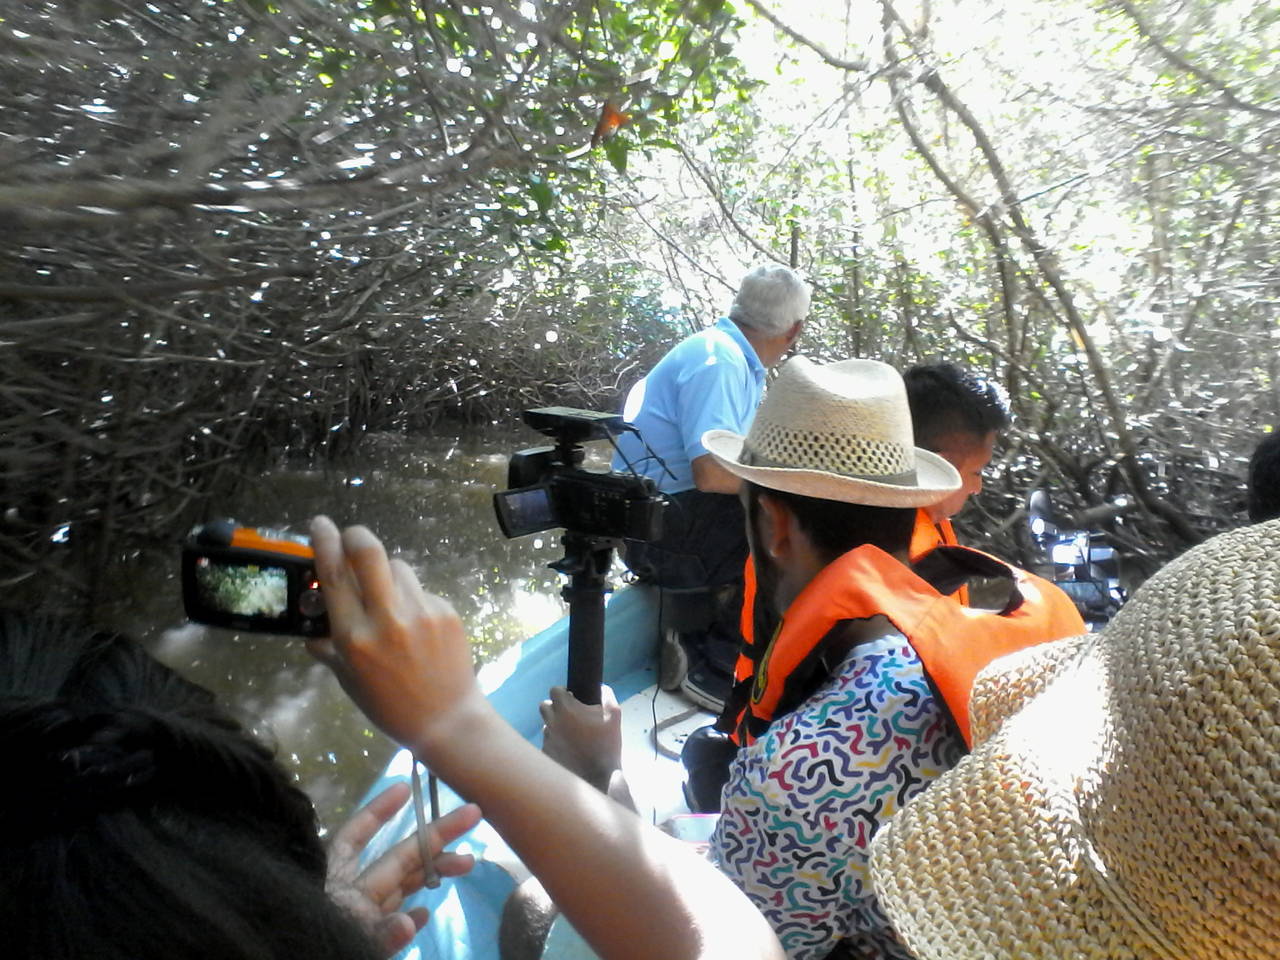 Paseo. Un paseo inolvidable los visitantes podrán tener al visitar en lancha el manglar, al descubrir cocodrilos y aves.